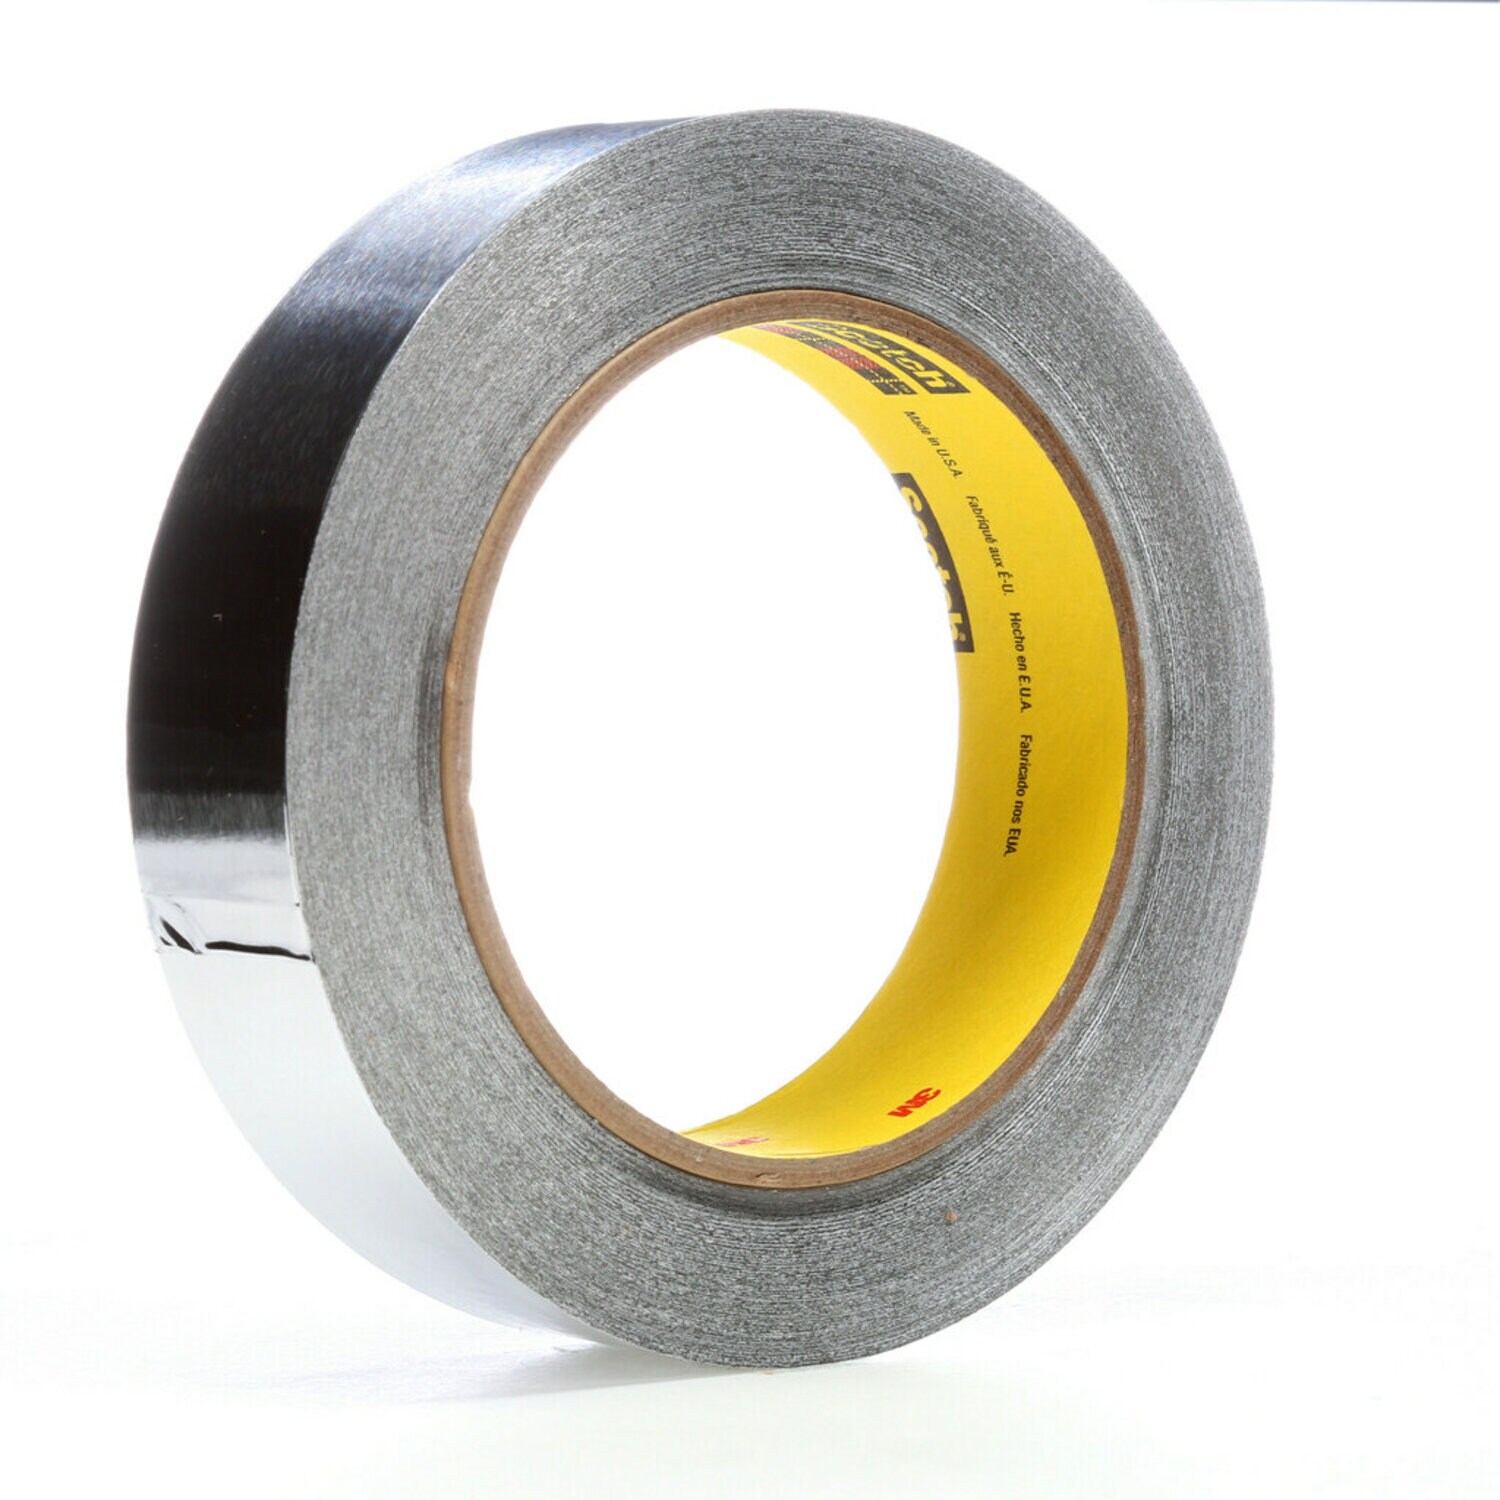 7000125097 - 3M High Temperature Aluminum Foil Tape 433, Silver, 1 in x 60 yd, 3.6
mil, 36 rolls per case